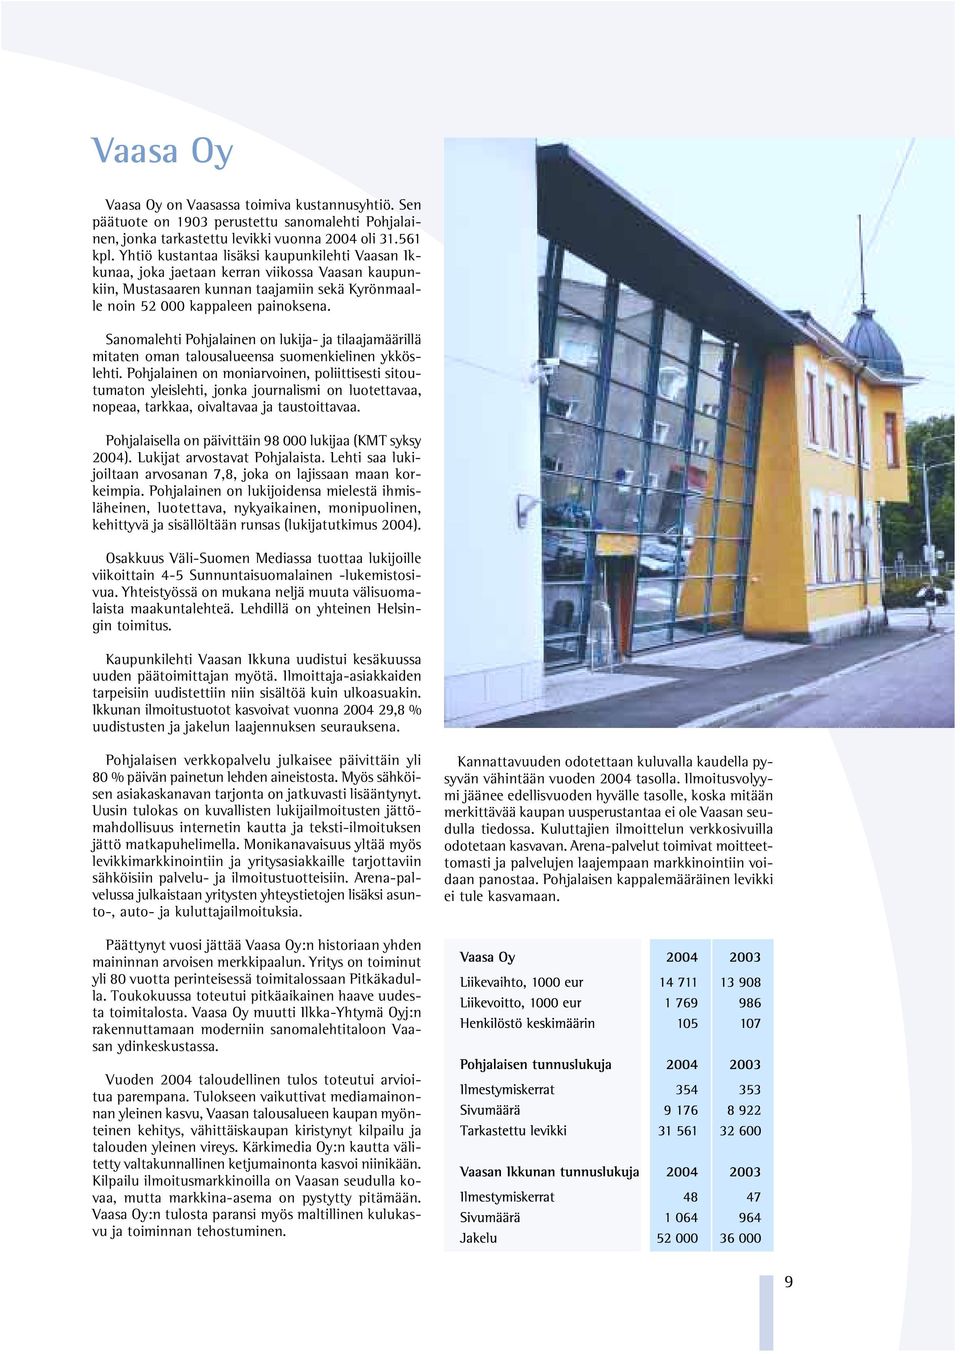 Sanomalehti Pohjalainen on lukija- ja tilaajamäärillä mitaten oman talousalueensa suomenkielinen ykköslehti.